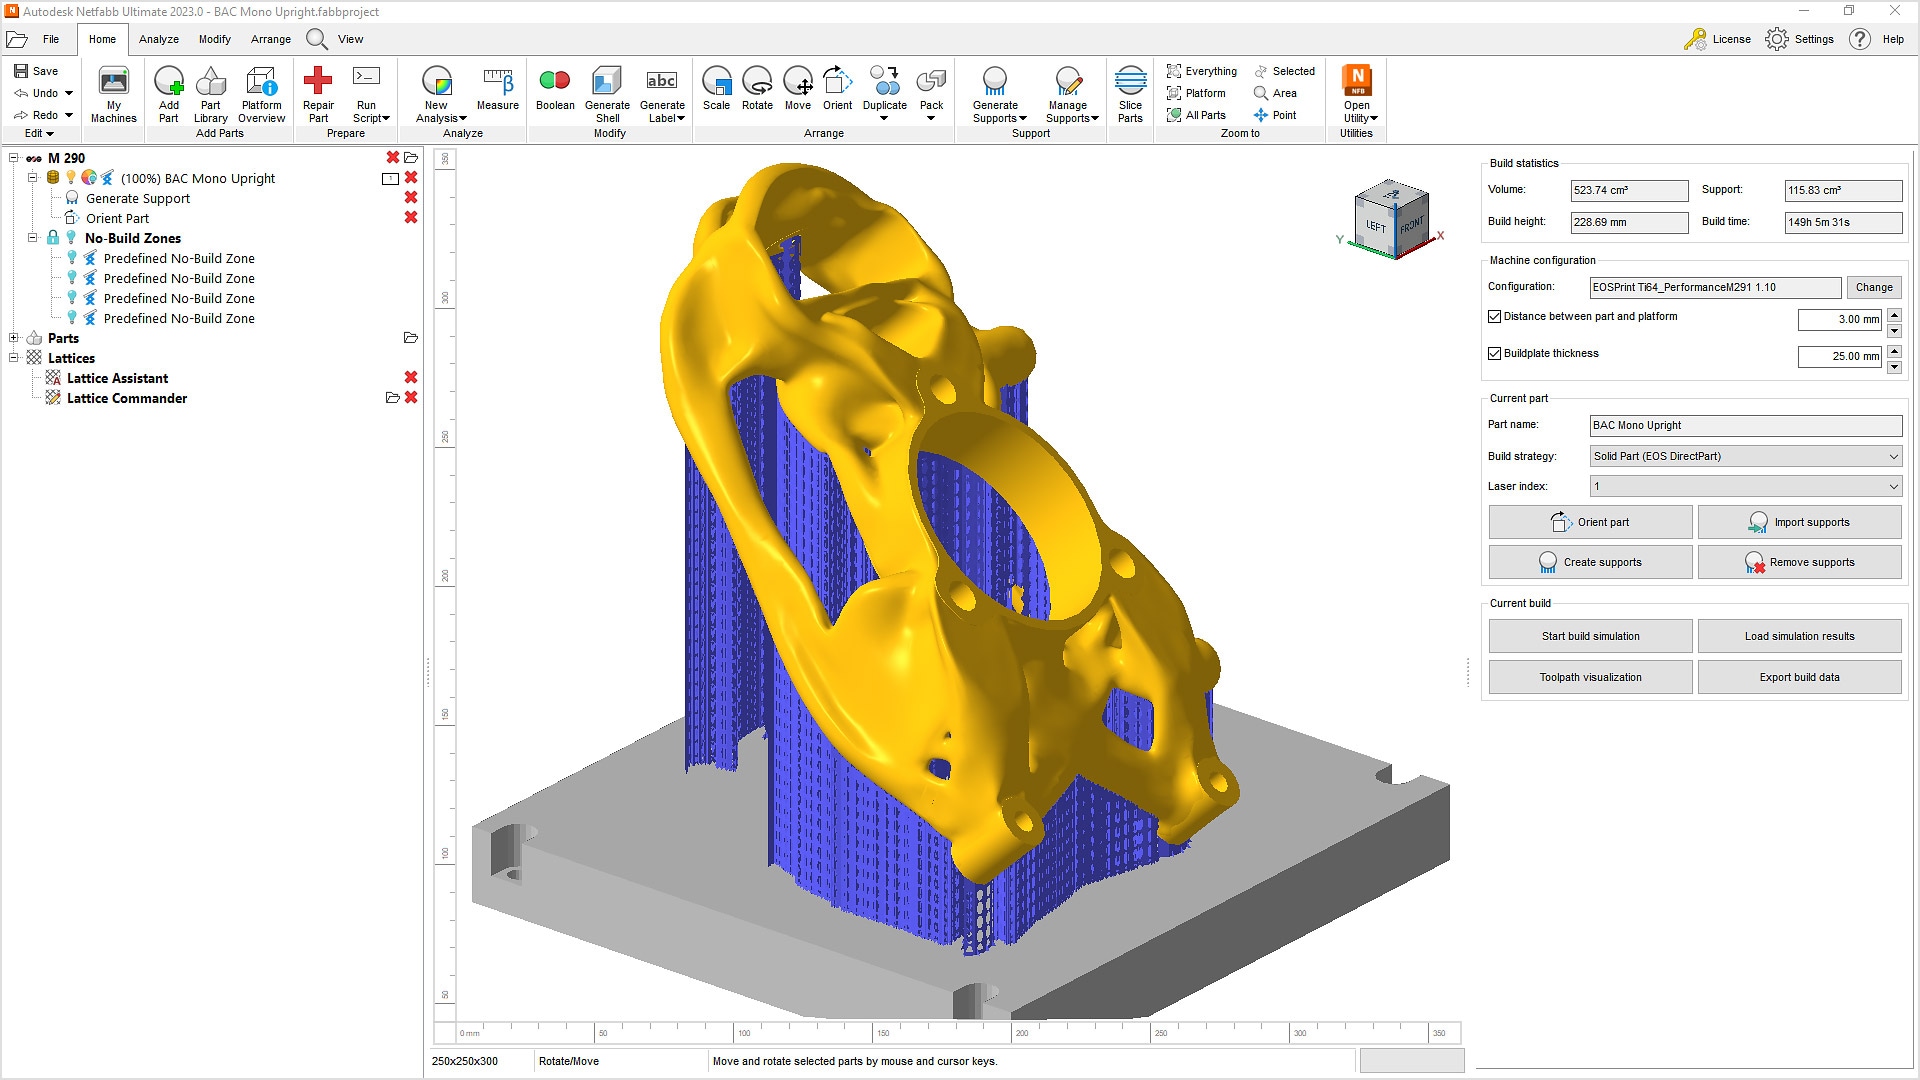 Image d’un support métallique imprimé en 3D dans Autodesk Netfabb montrant la structure du support et un récapitulatif de la fabrication